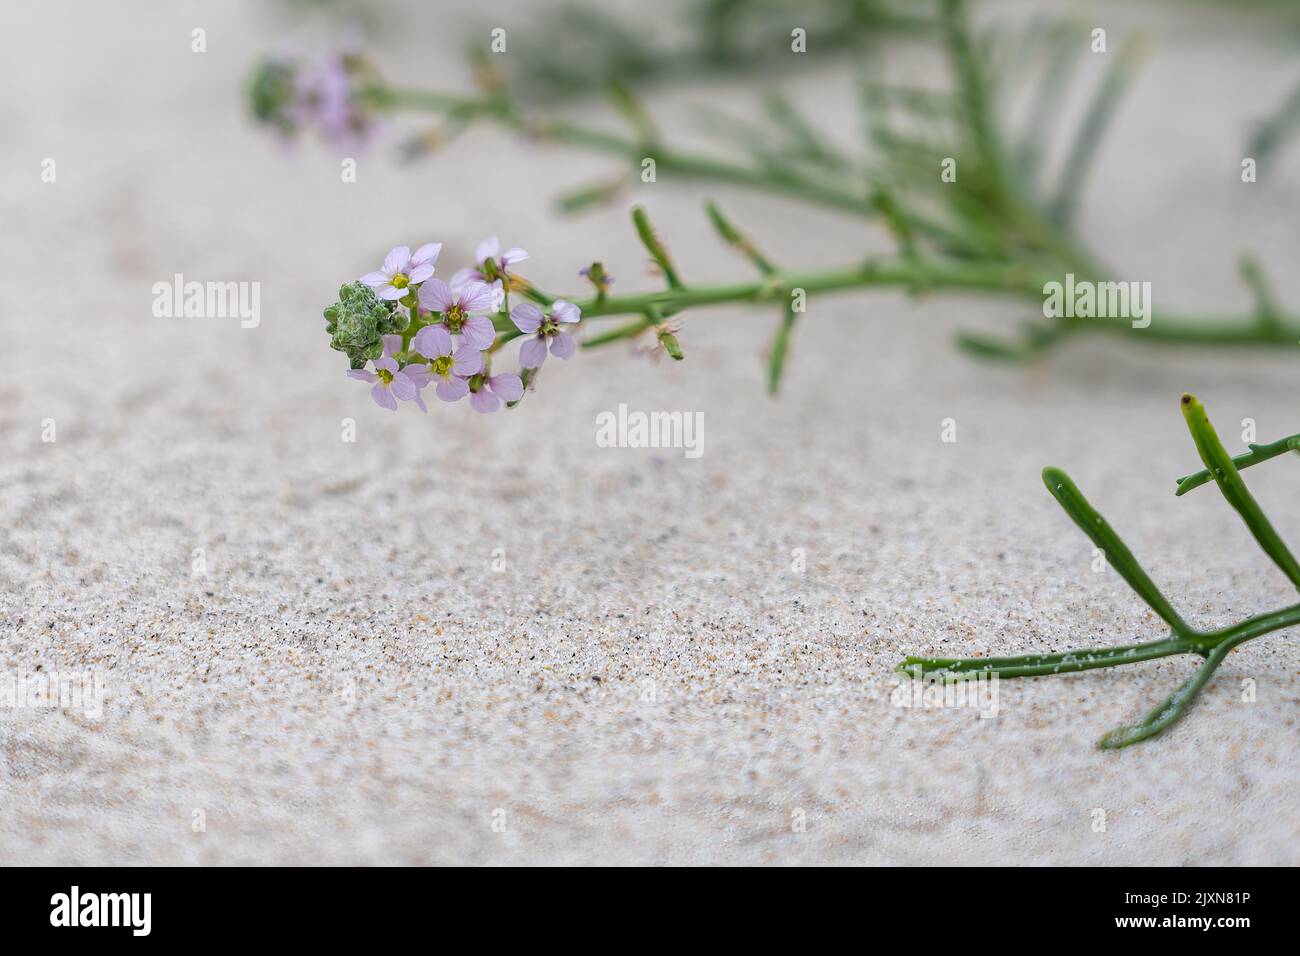 A close-up shot of Cakile maritima bush on a beach Stock Photo